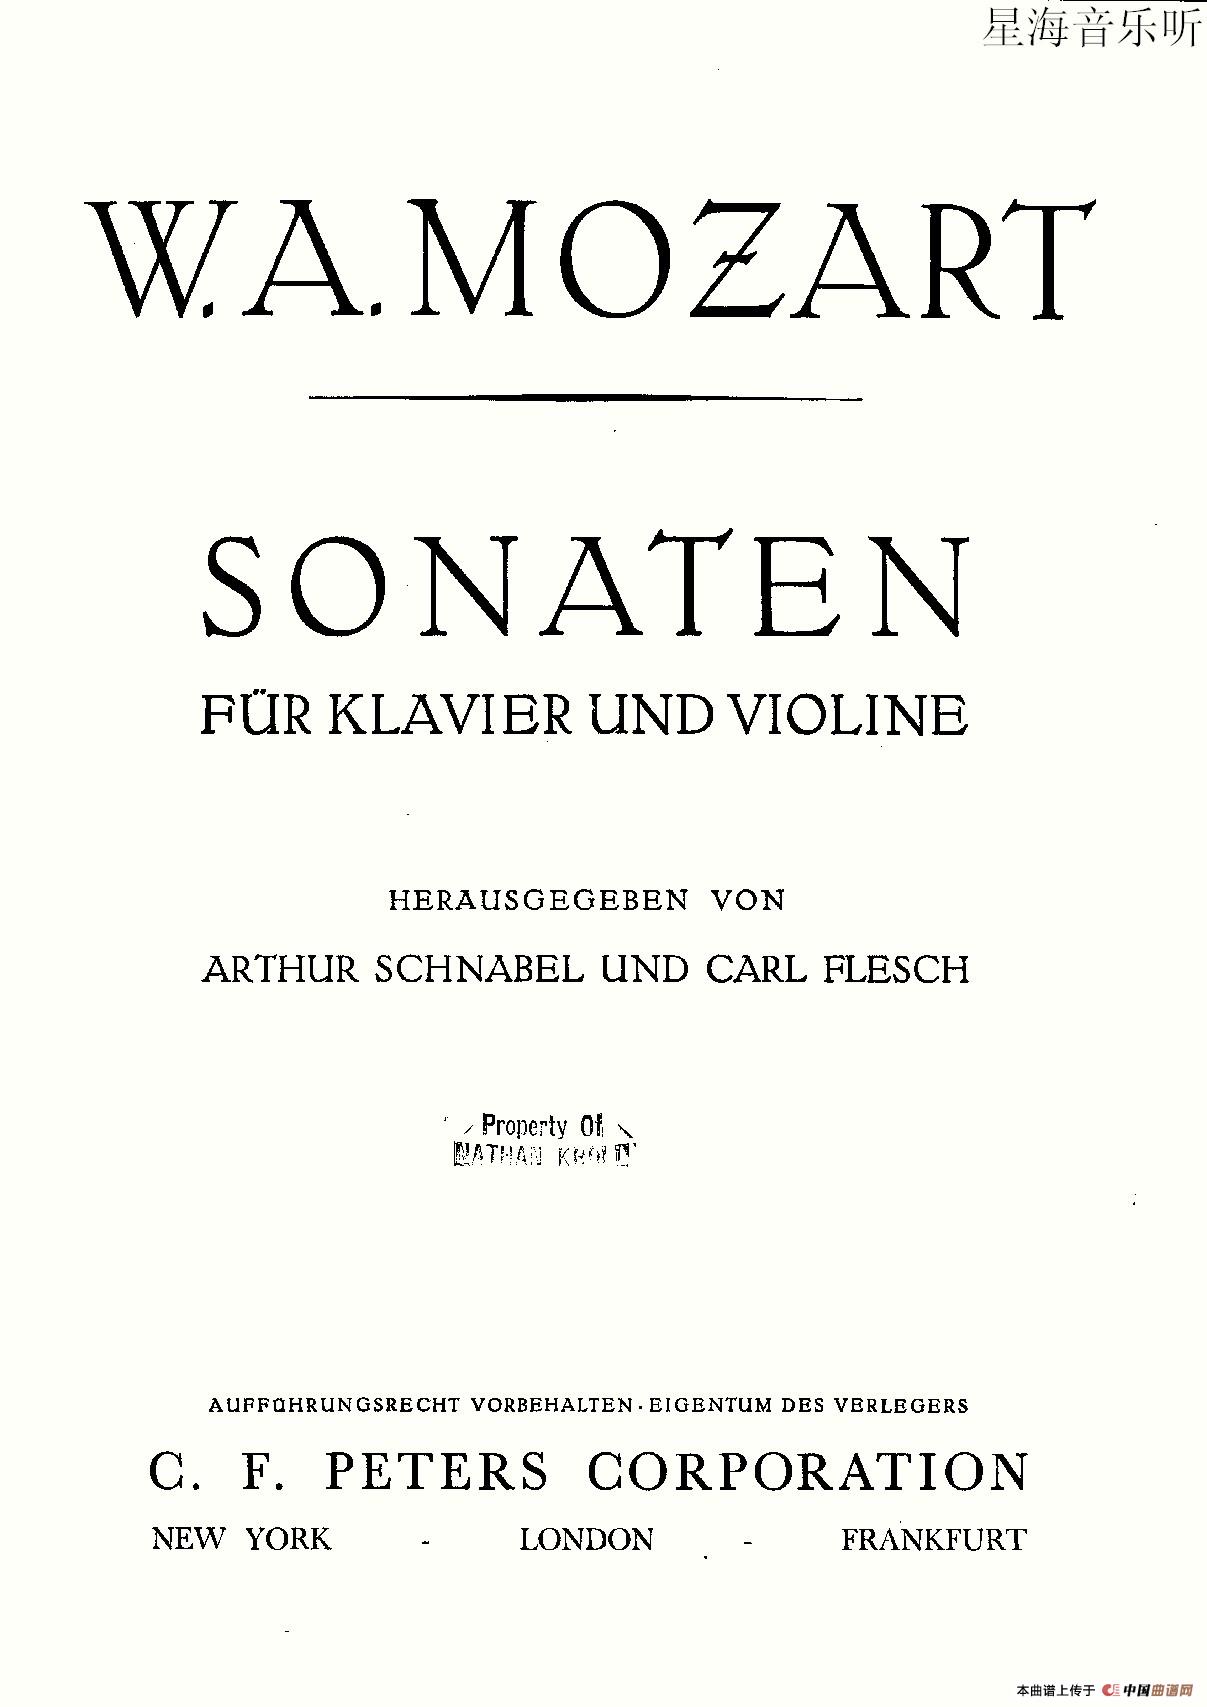 Violin Sonata No.2第二小提琴奏鸣曲小提琴谱